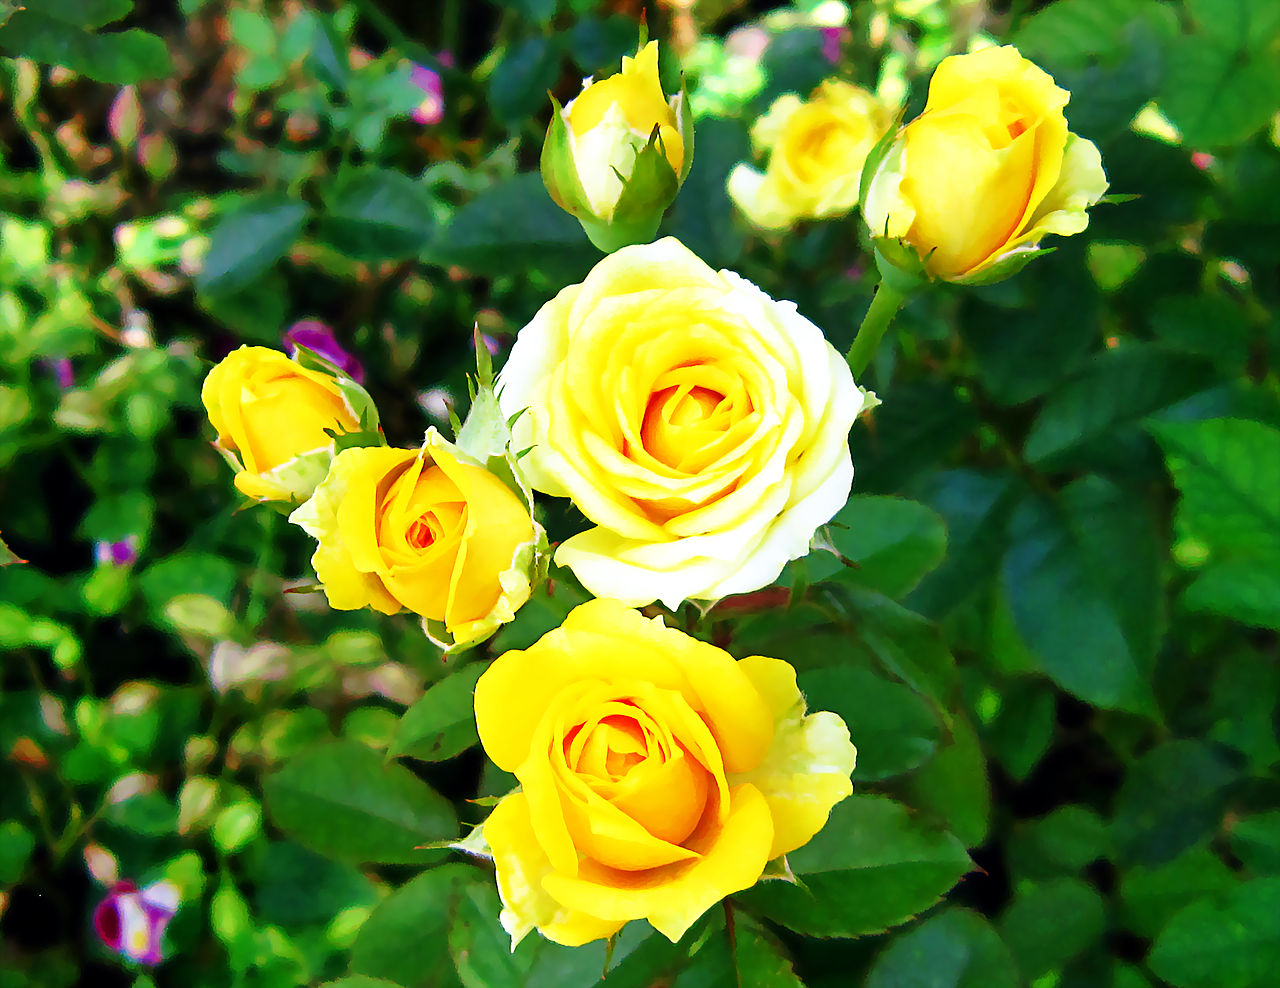 Hoa hồng vàng là một loại hoa rất đặc biệt, với vẻ đẹp tuyệt vời mà ai nhìn cũng phải ngất ngây. Bức hình về hoa hồng vàng này tràn đầy sắc màu và ánh sáng, khiến cho ai nhìn vào đều cảm thấy vô cùng hài lòng và sảng khoái.